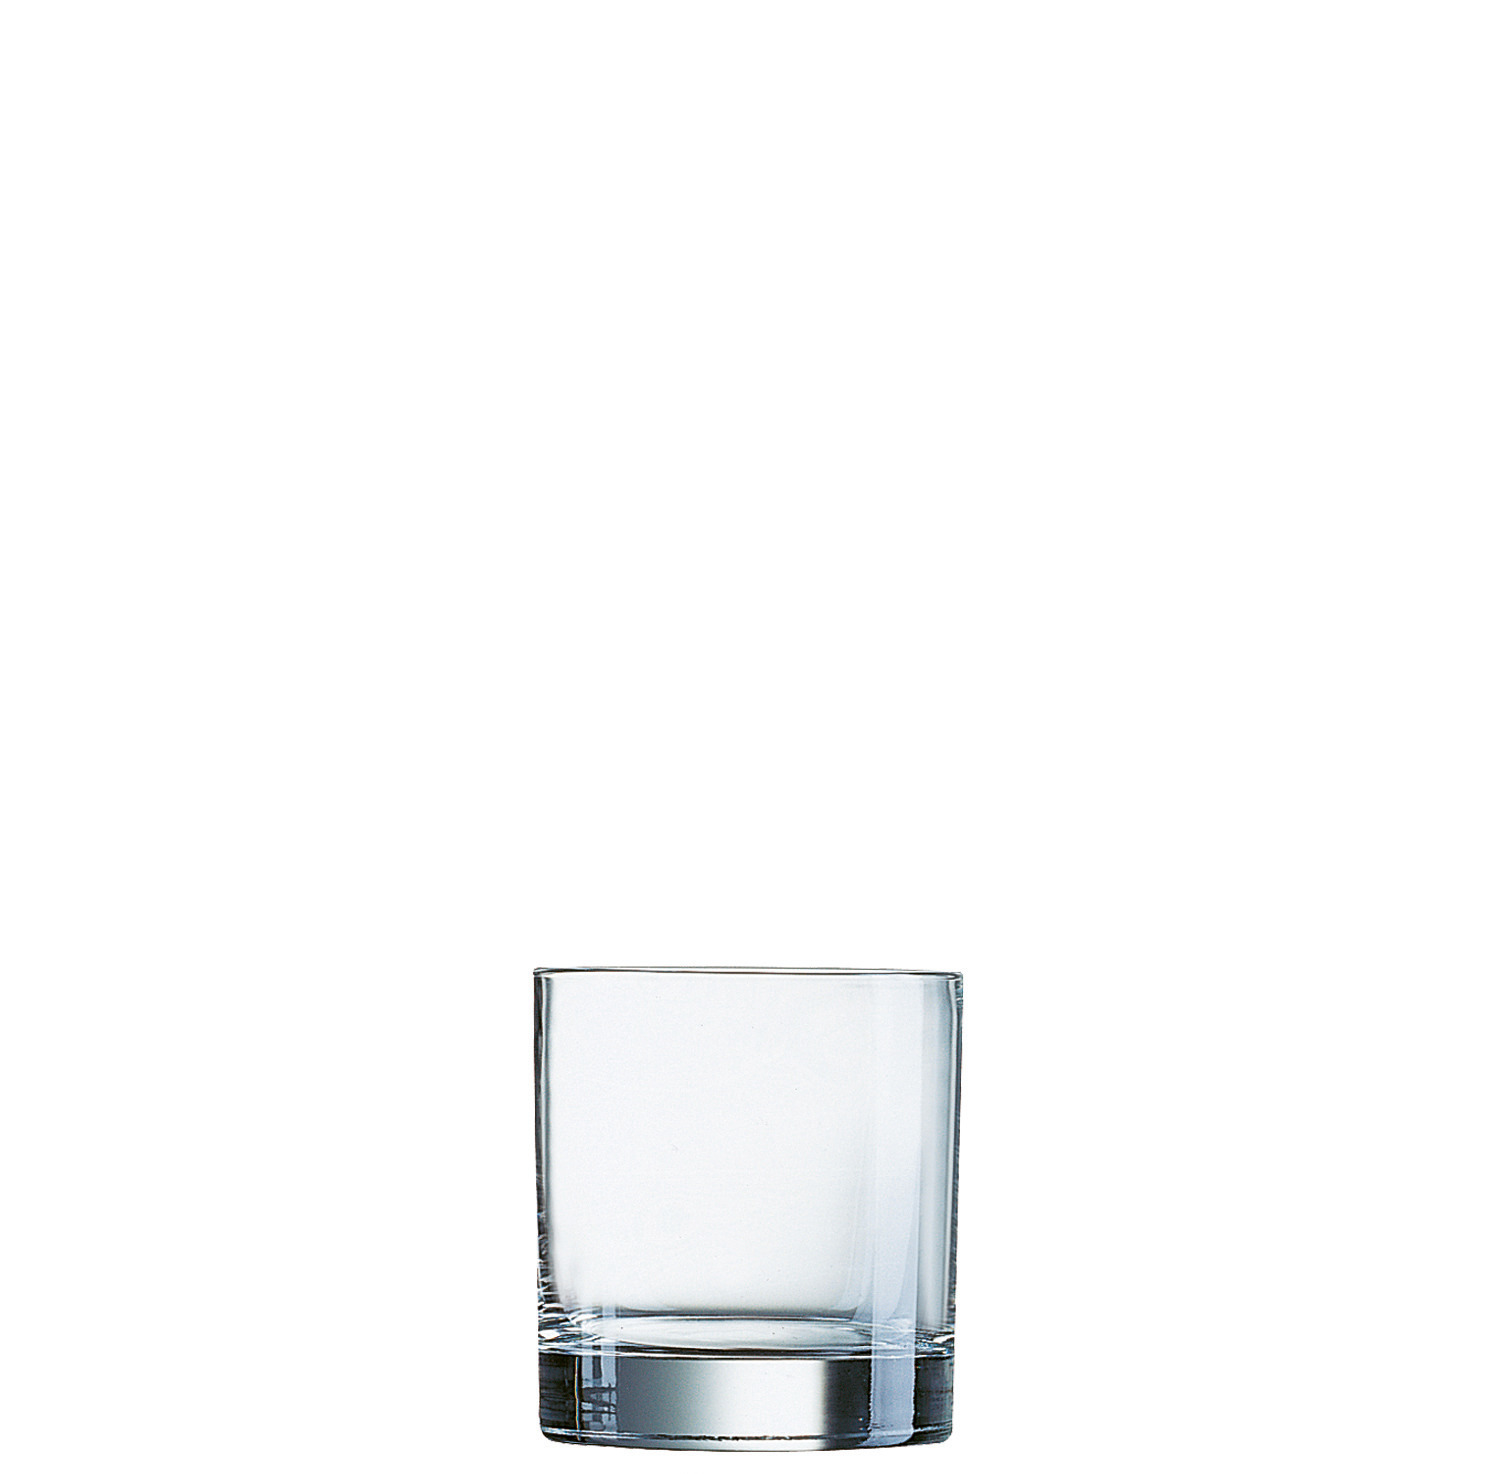 Whiskyglas "FB38" 88 mm / 0,38 l transparent